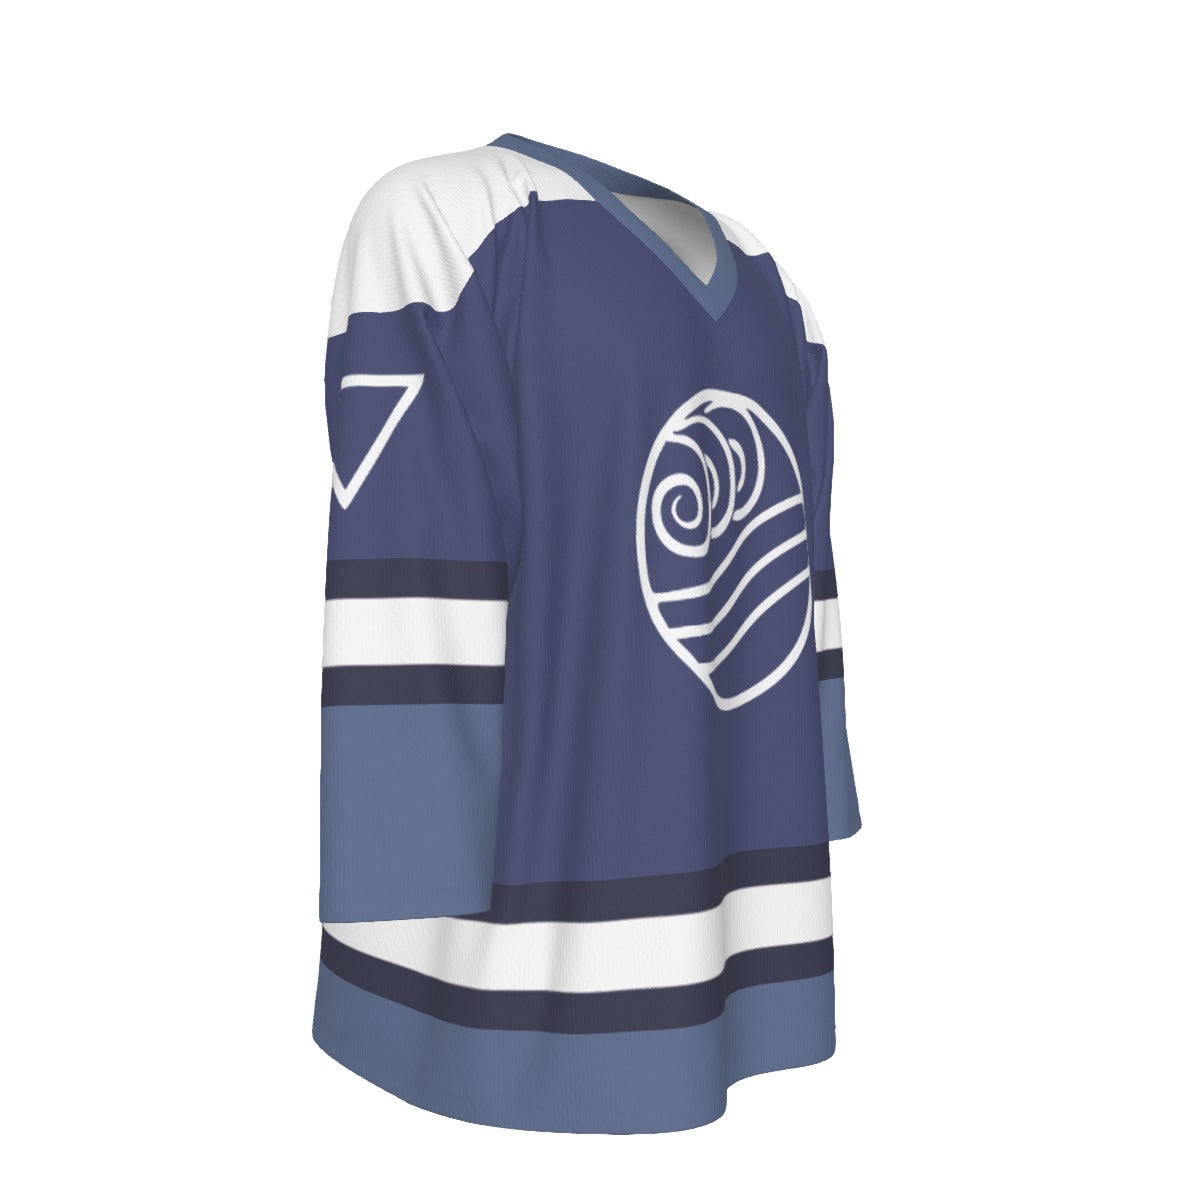 Avatar / Water Tribe Unisex V-neck Hockey Jersey